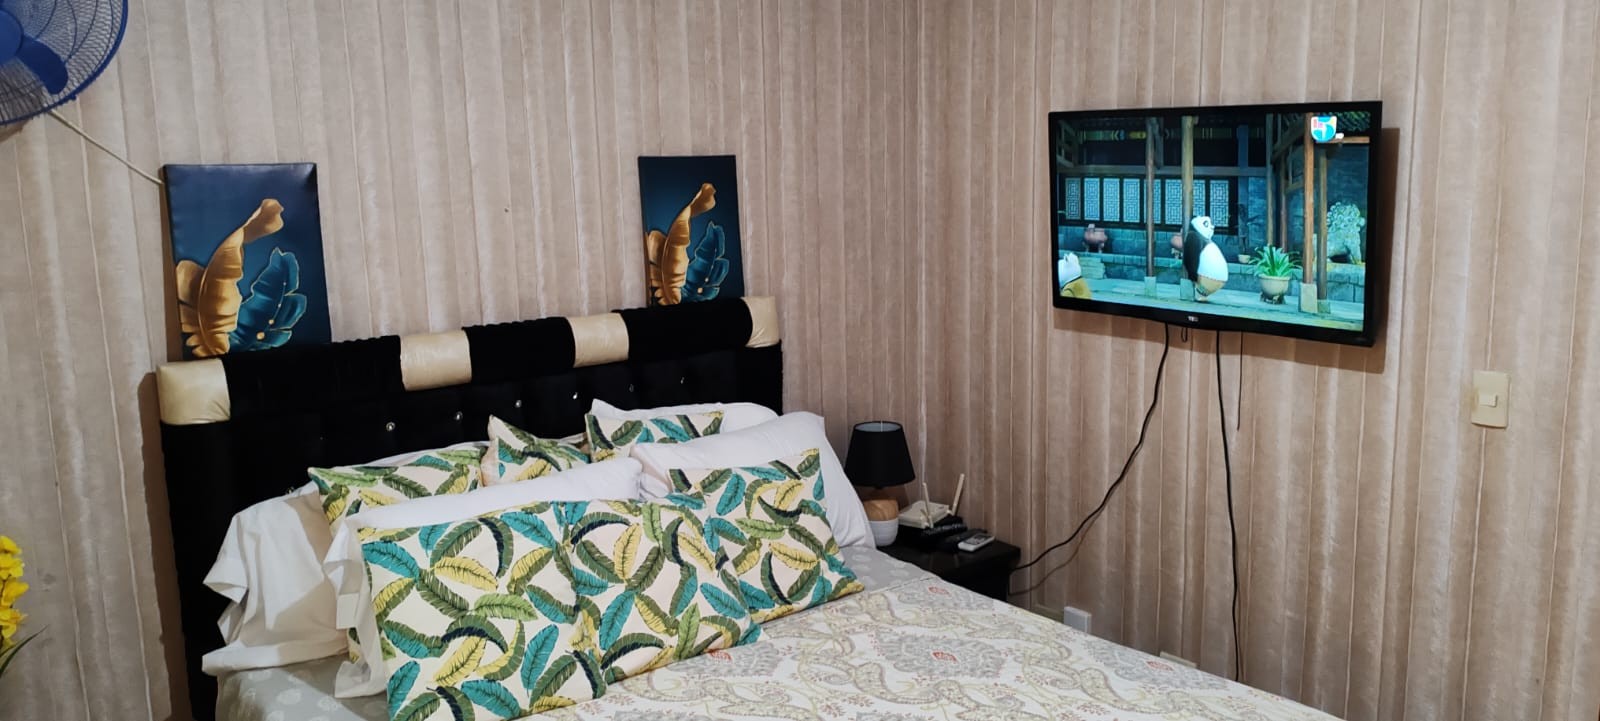 apartamentos - rento apartamento amueblado en jacobo majluta a 20 minutos de embajada americana 9